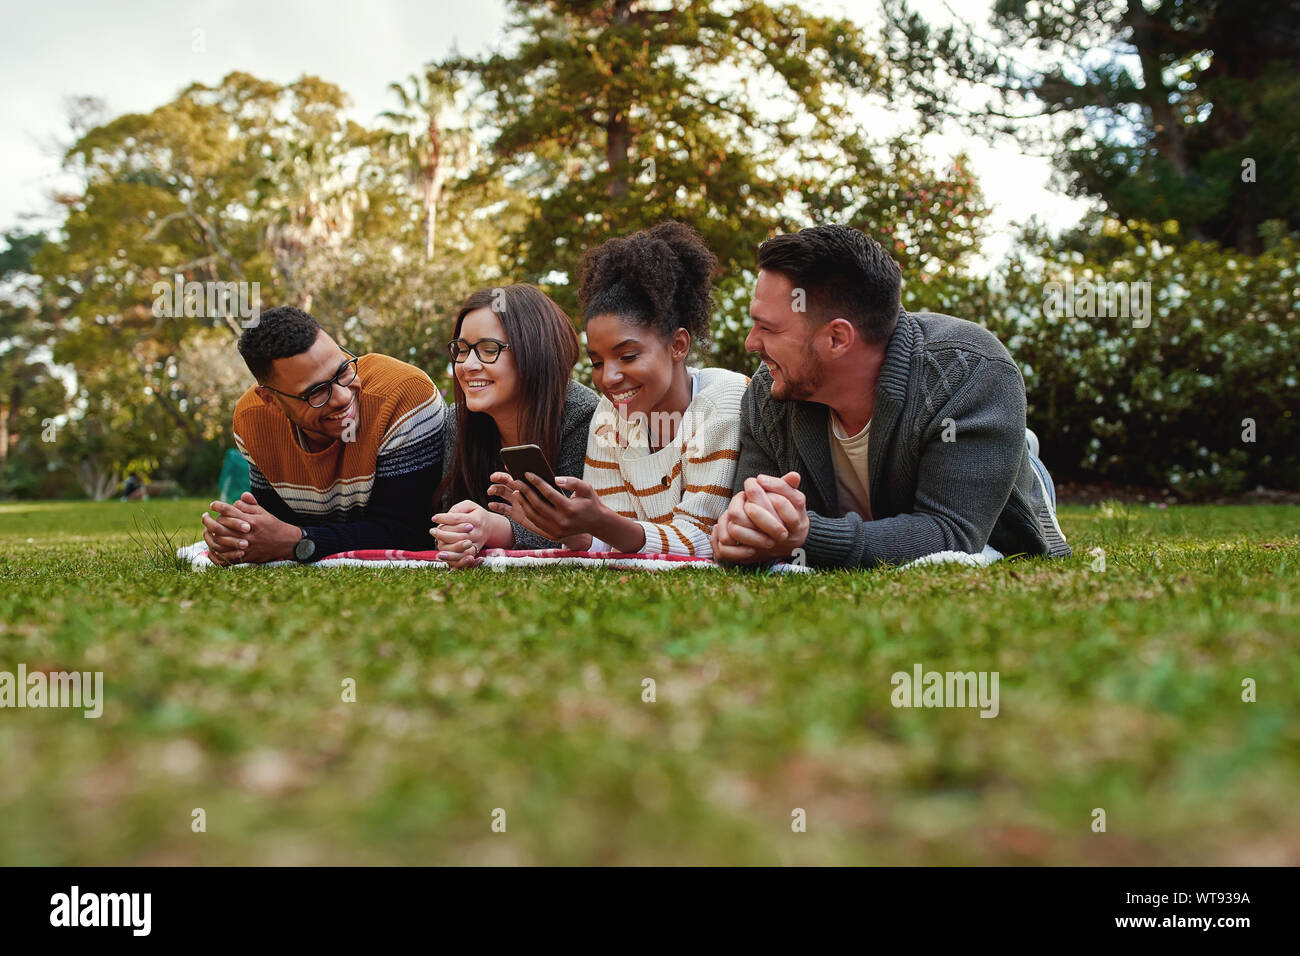 Sorridente americano africano donna giovane studente mostrando qualcosa di interessante per i suoi amici giacente insieme su una coperta sul prato verde nel parco Foto Stock